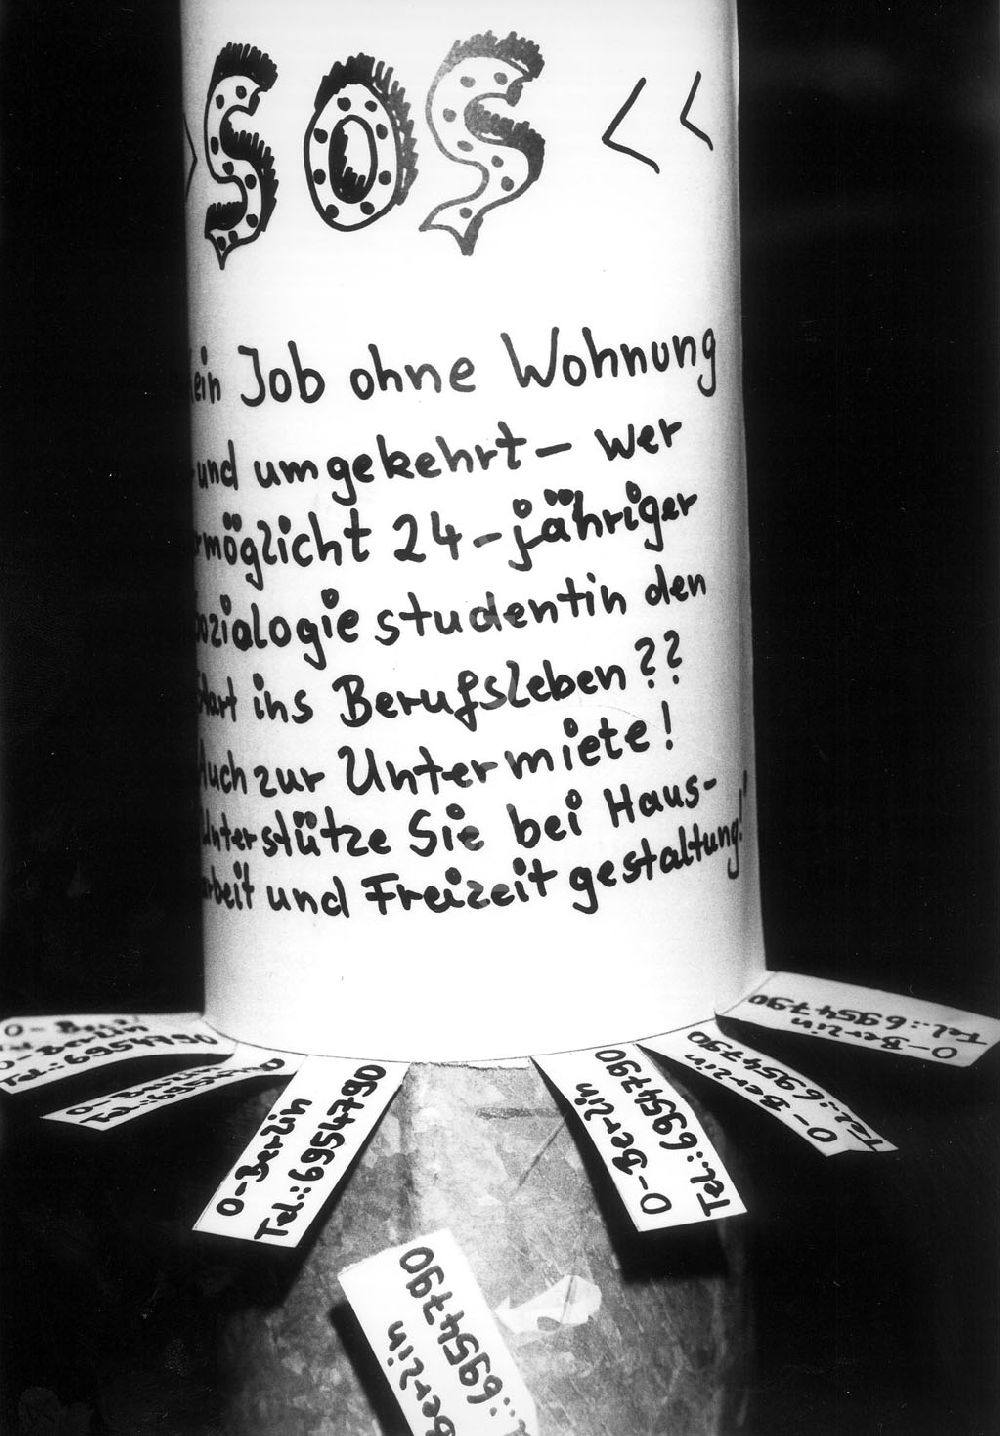 Berlin: Per Inserat an einem Laternenmast im Prenzlauer Berg sucht eine Soziologie-Studentin eine feste Bleibe - ein SOS-Ruf 08